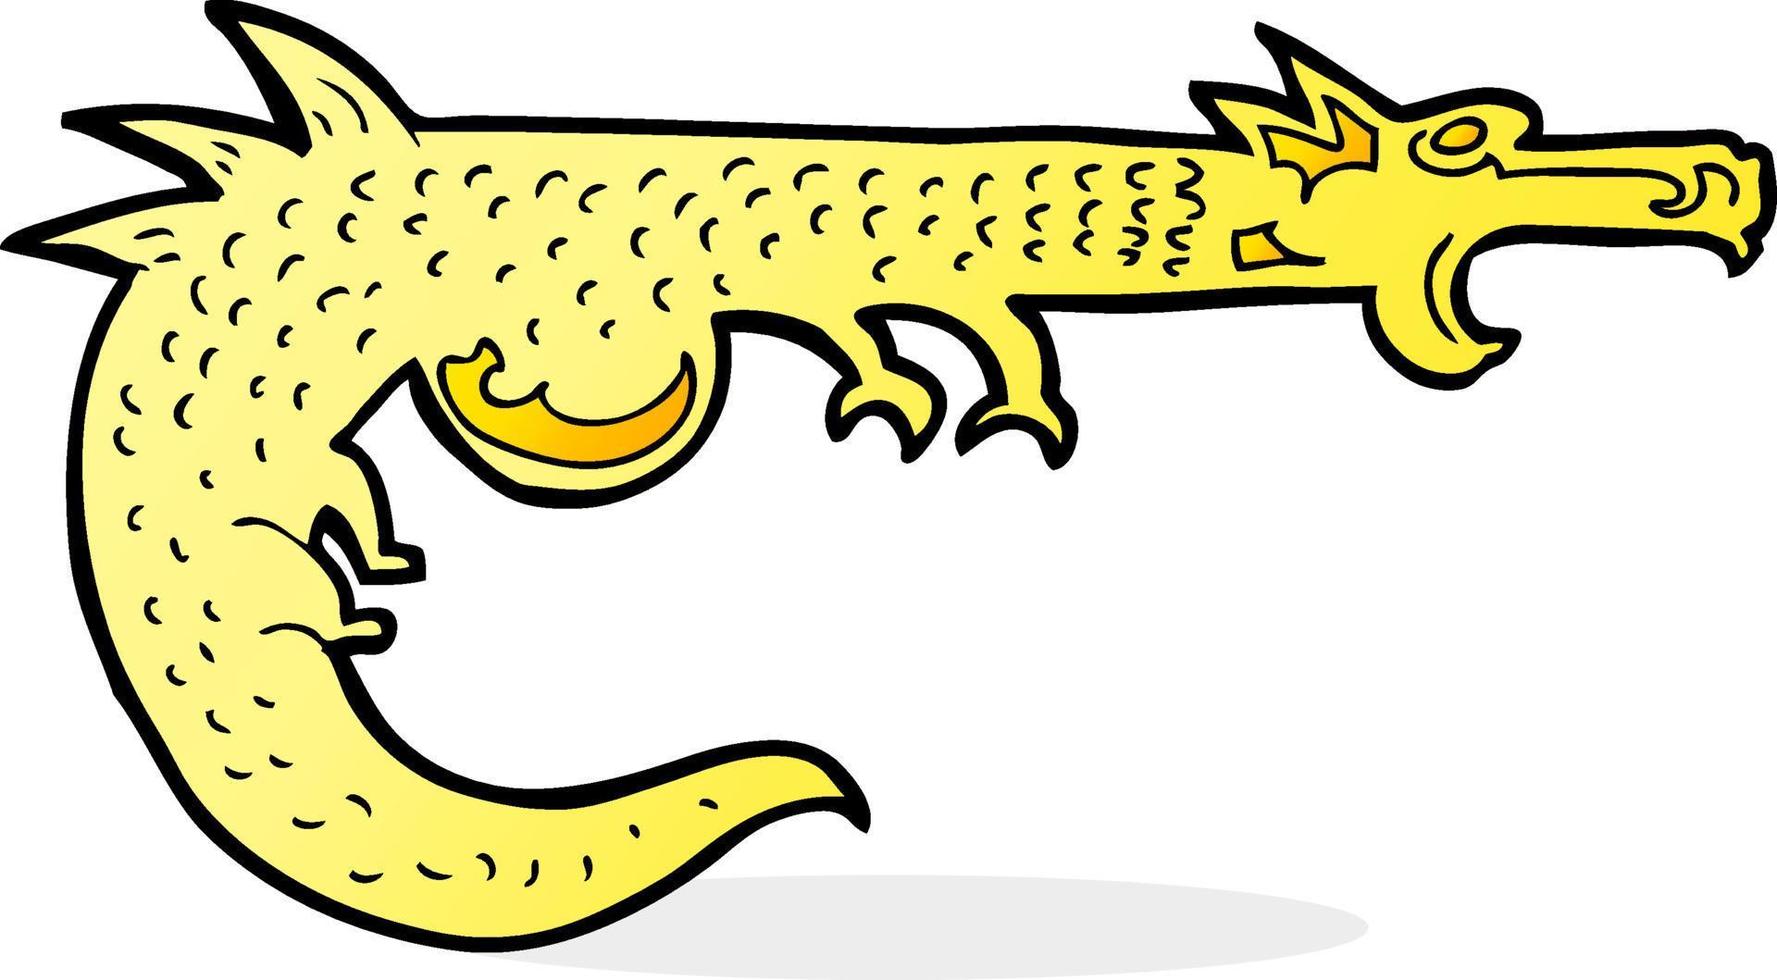 cartoon medieval dragon vector